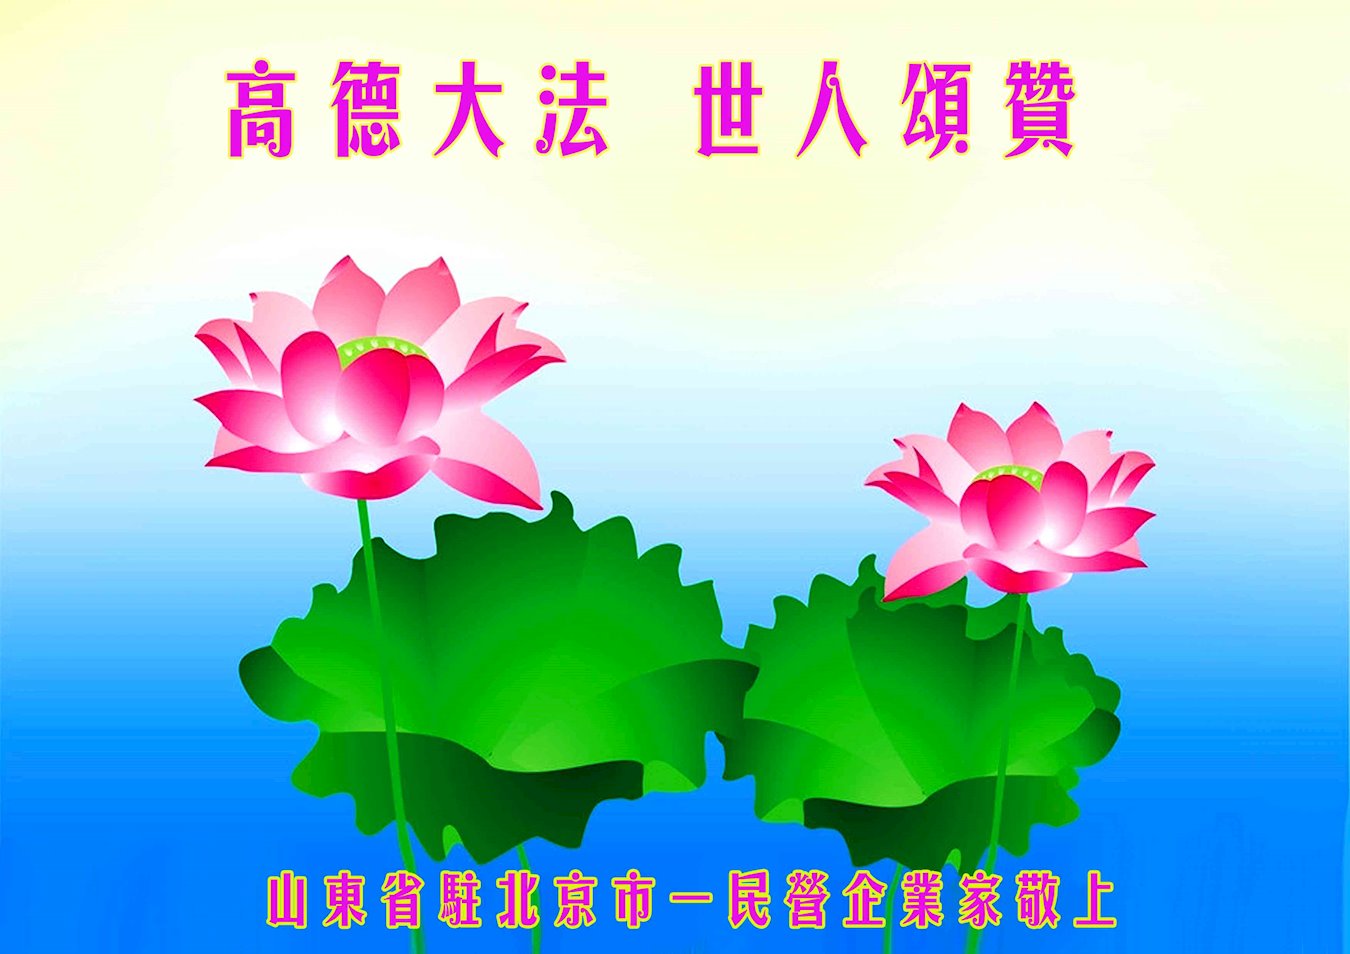 Image for article Un entrepreneur, un secrétaire de village et un employé du système judiciaire célèbrent la Journée mondiale du Falun Dafa